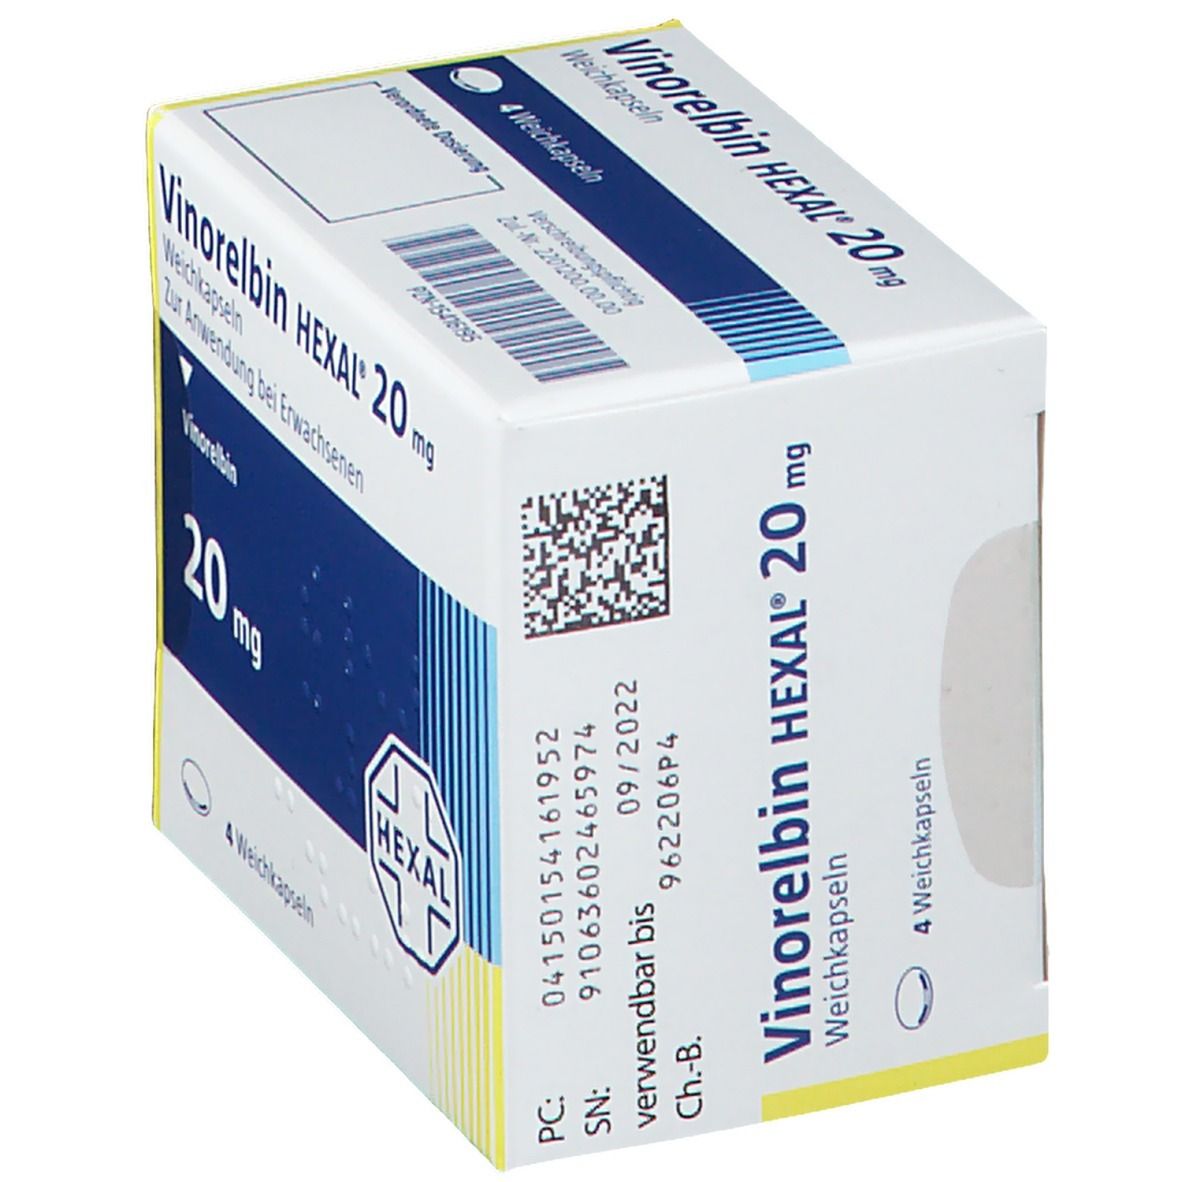 Vinorelbin HEXAL® 20 mg